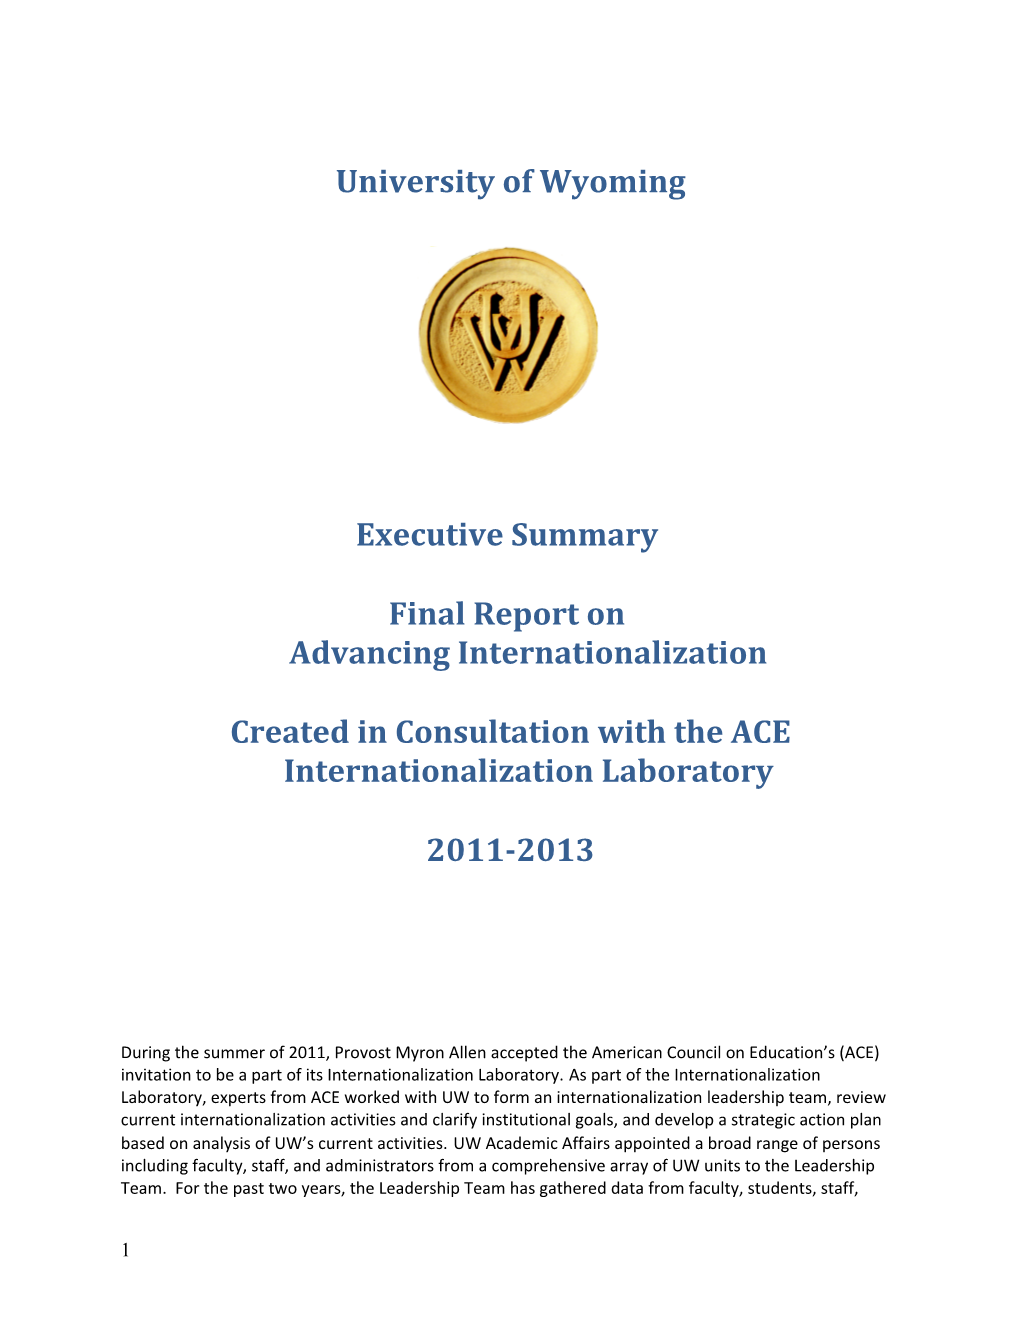 Final Report on Advancing Internationalization